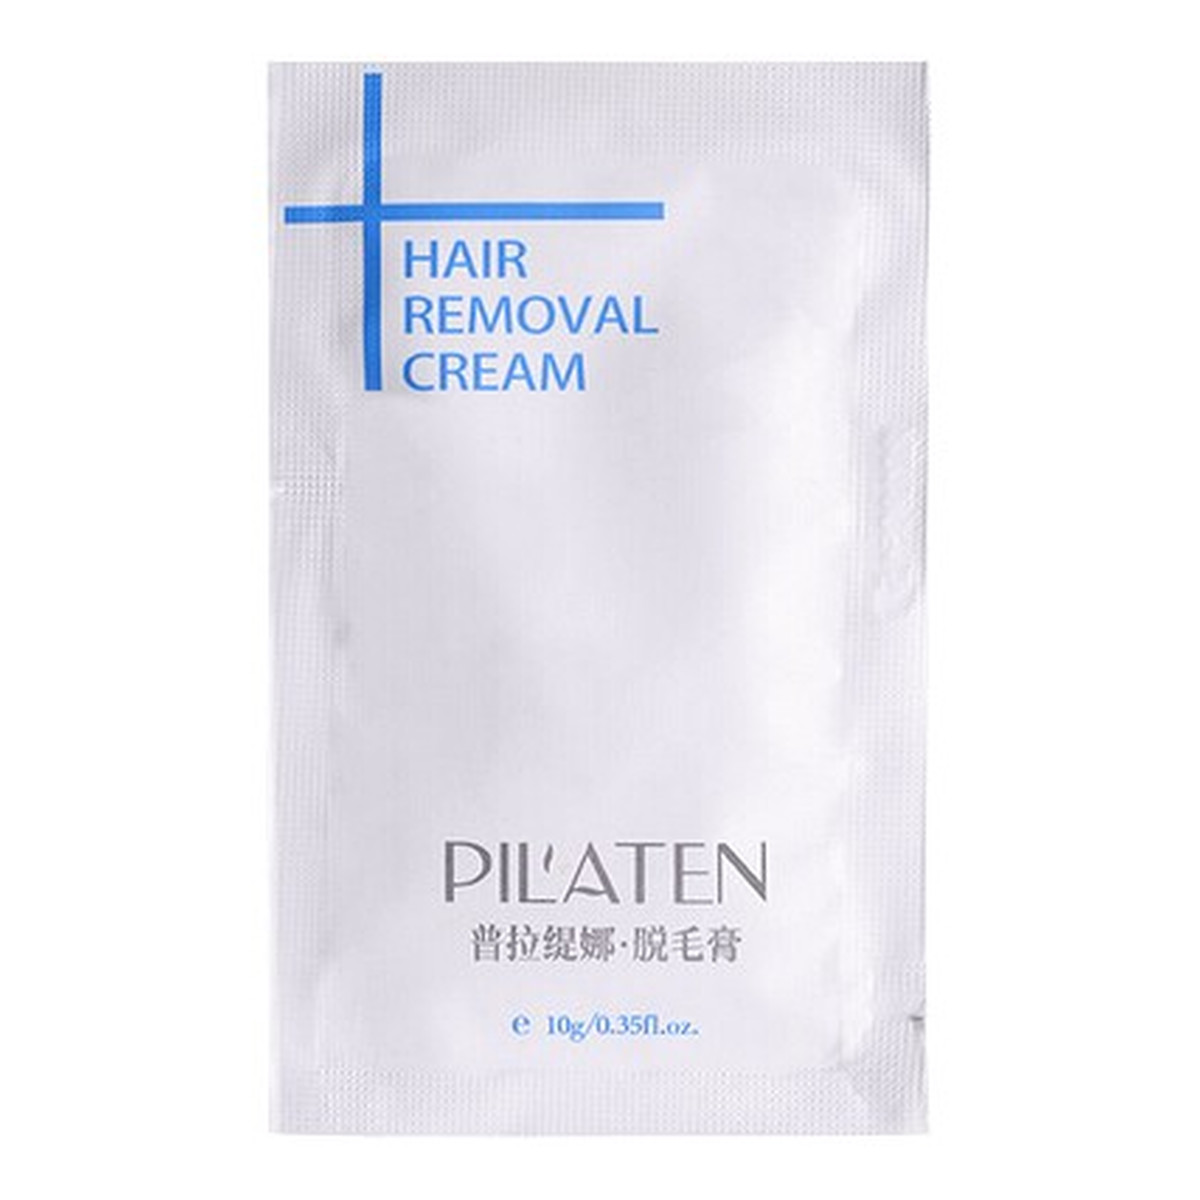 Pilaten Hair Removal Cream krem do depilacji 10g